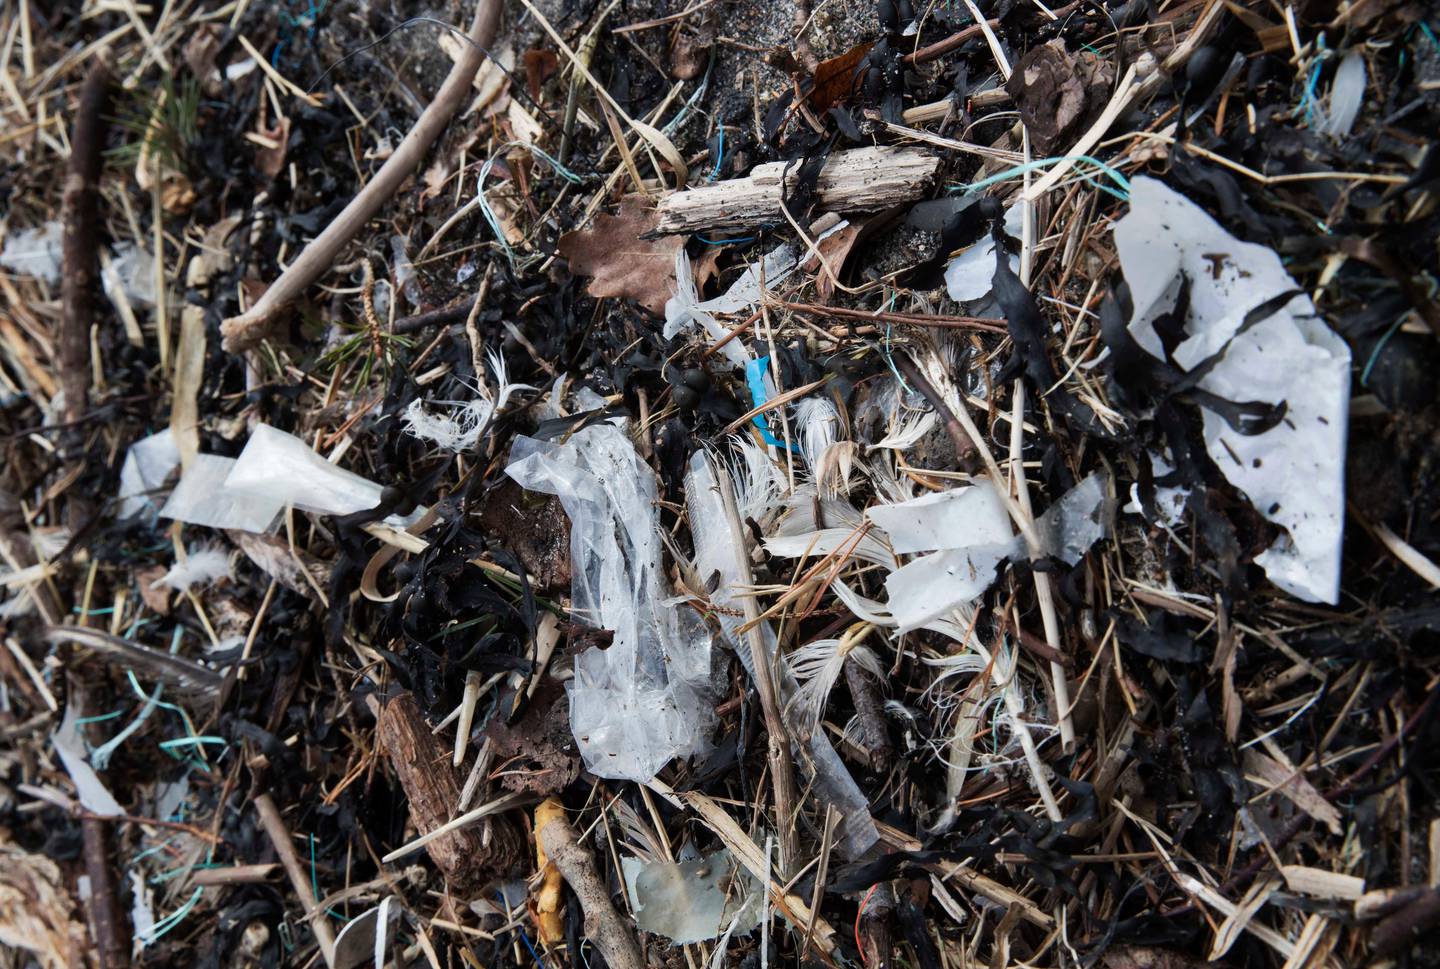 Oslo  20180326.I disse dager dukker det opp plast, mikroplast og mye skrot i strandkanten rundt om i hele landet. Her fra Bygdøy i OsloFoto: Terje Pedersen / NTB scanpix